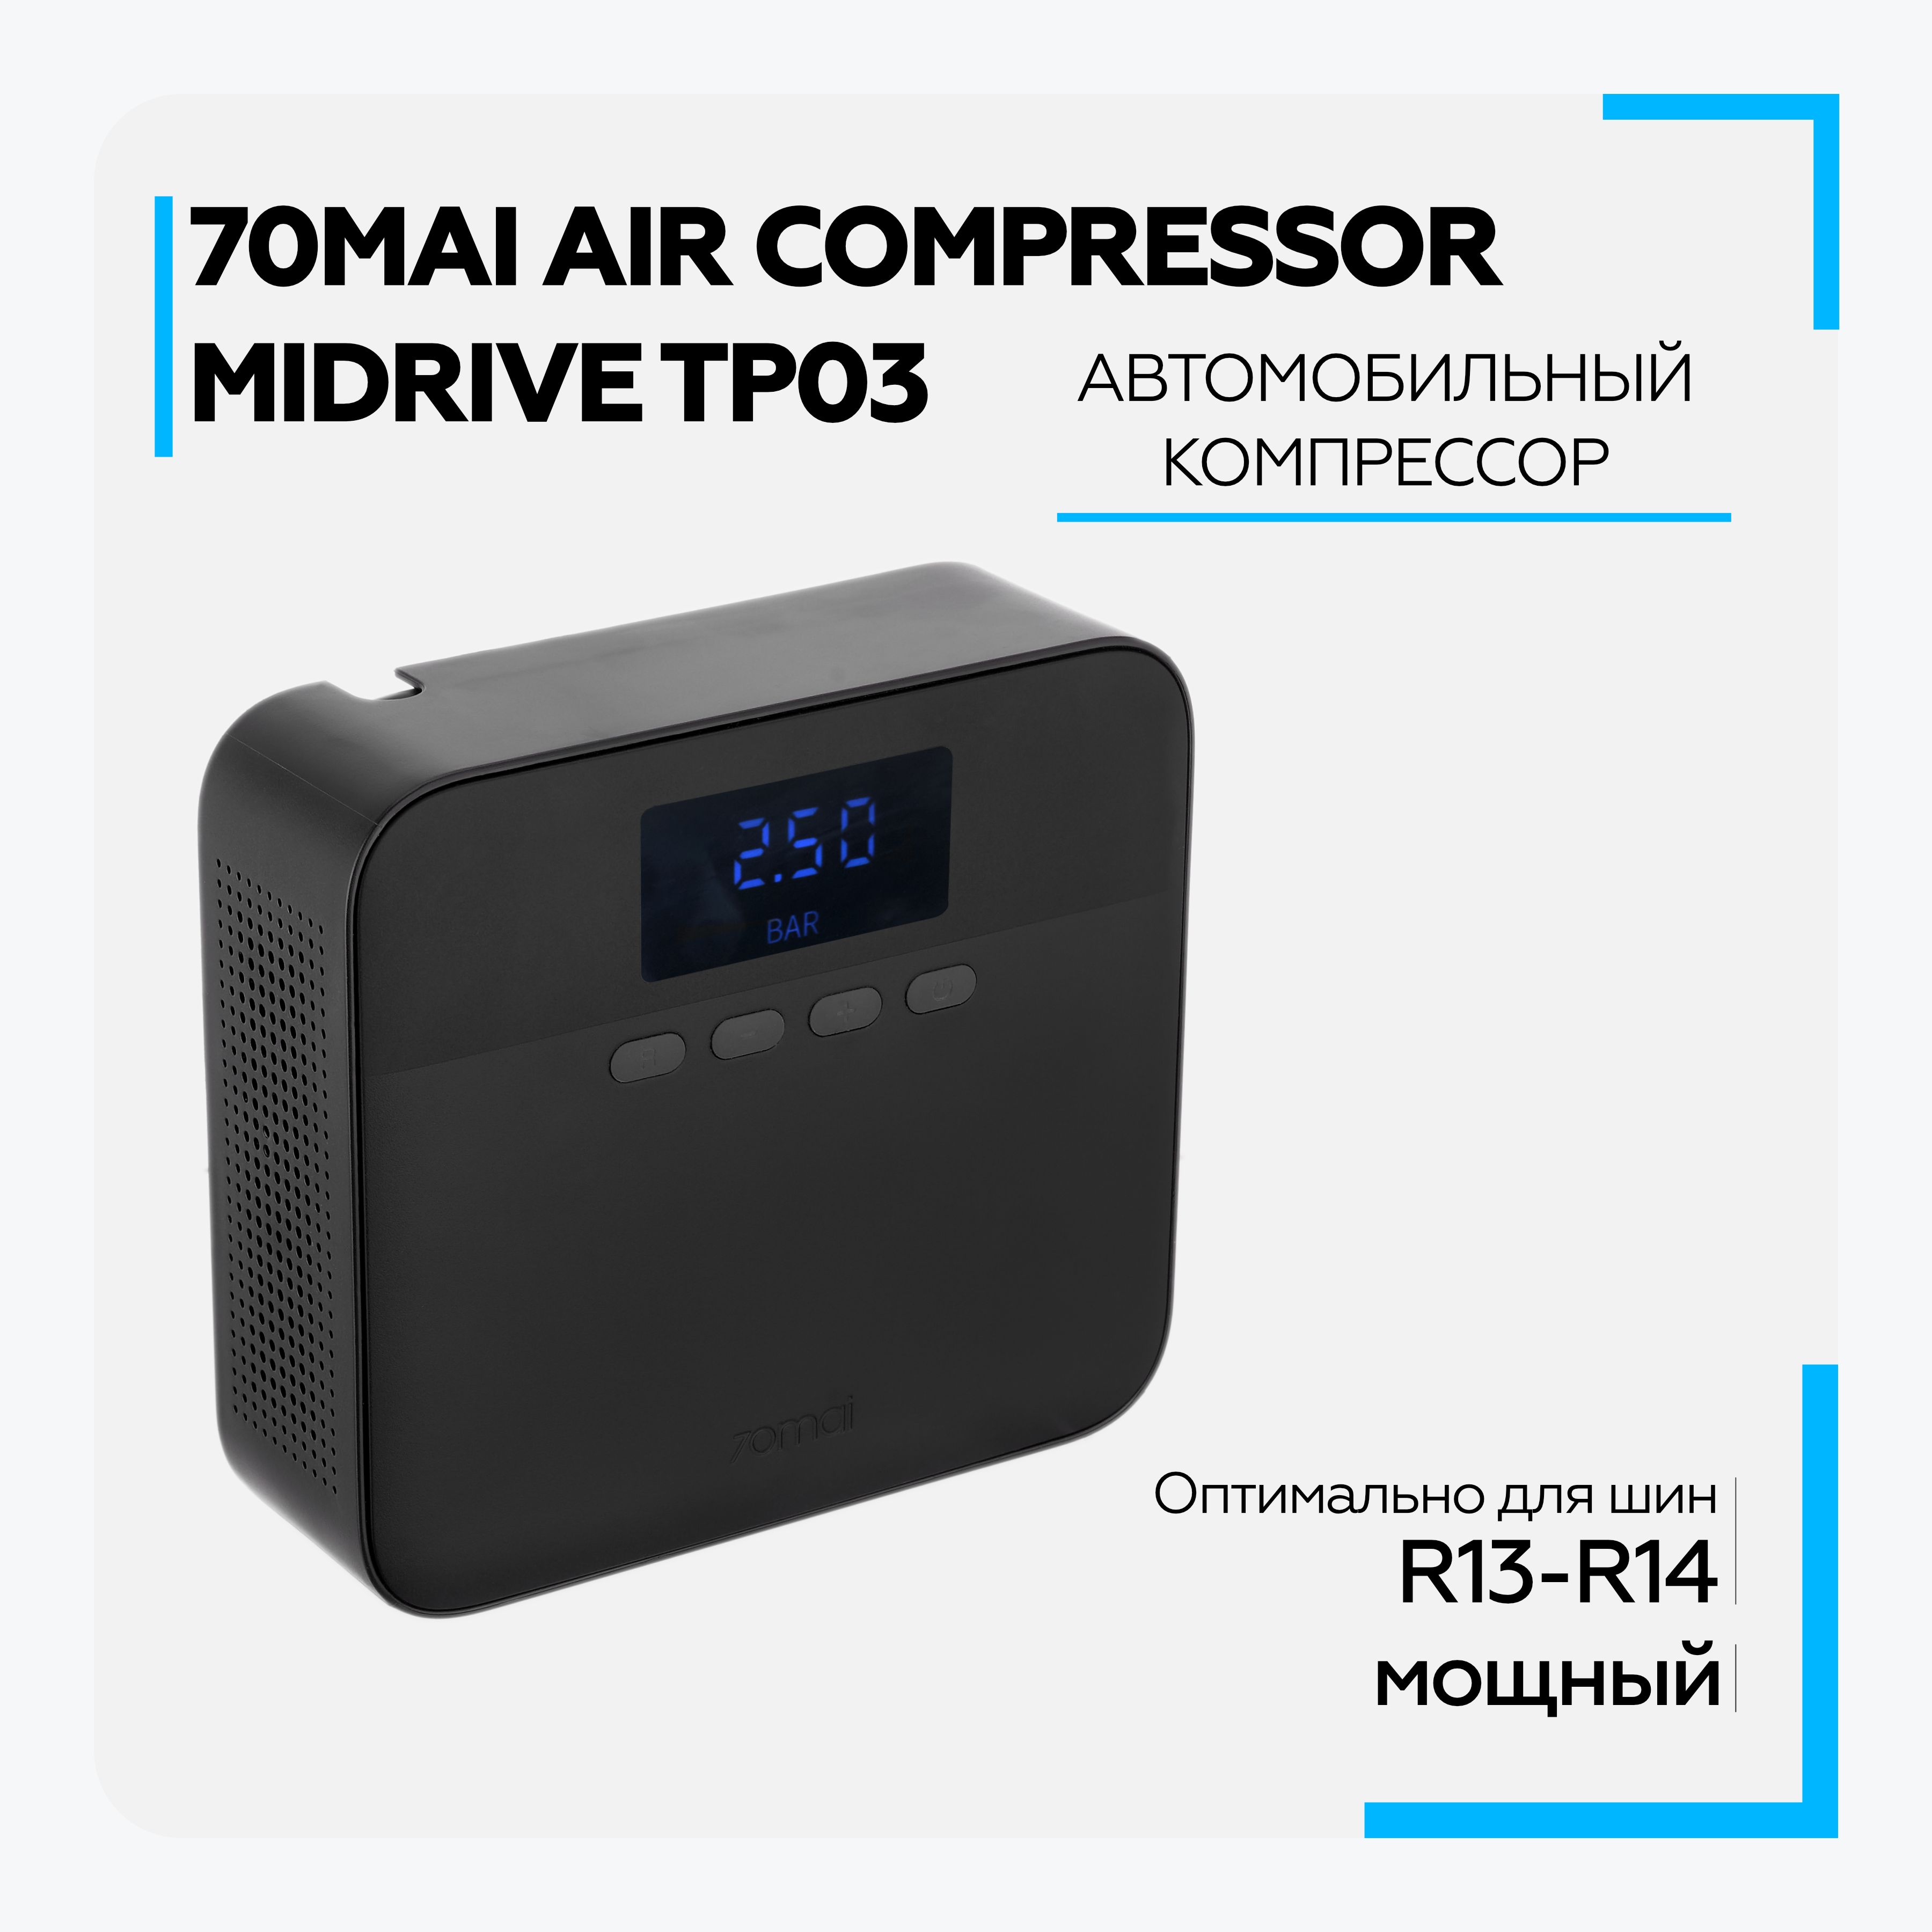 70mai air compressor lite tp03. Автомобильный компрессор Xiaomi 70mai Air Compressor Lite (MIDRIVE tp03). Автомобильный компрессор 70mai Air Compressor Lite MIDRIVE. Автомобильный компрессор 70mai Air Compressor Lite MIDRIVE tp03. 70mai Air Compressor Lite.